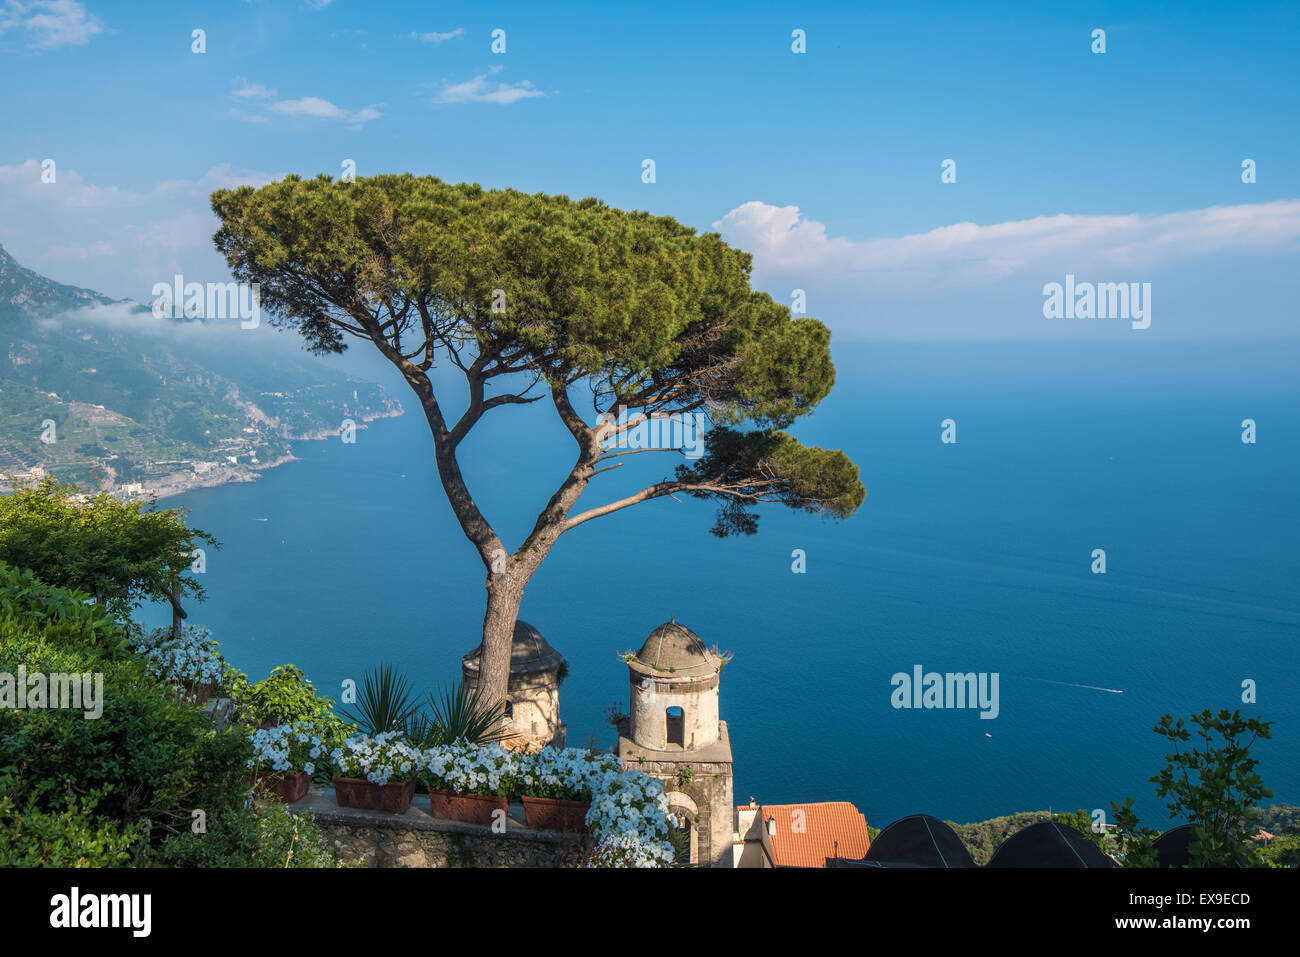 Villa Rufolo in Ravello town, Amalfi coast, Italy Stock Photo